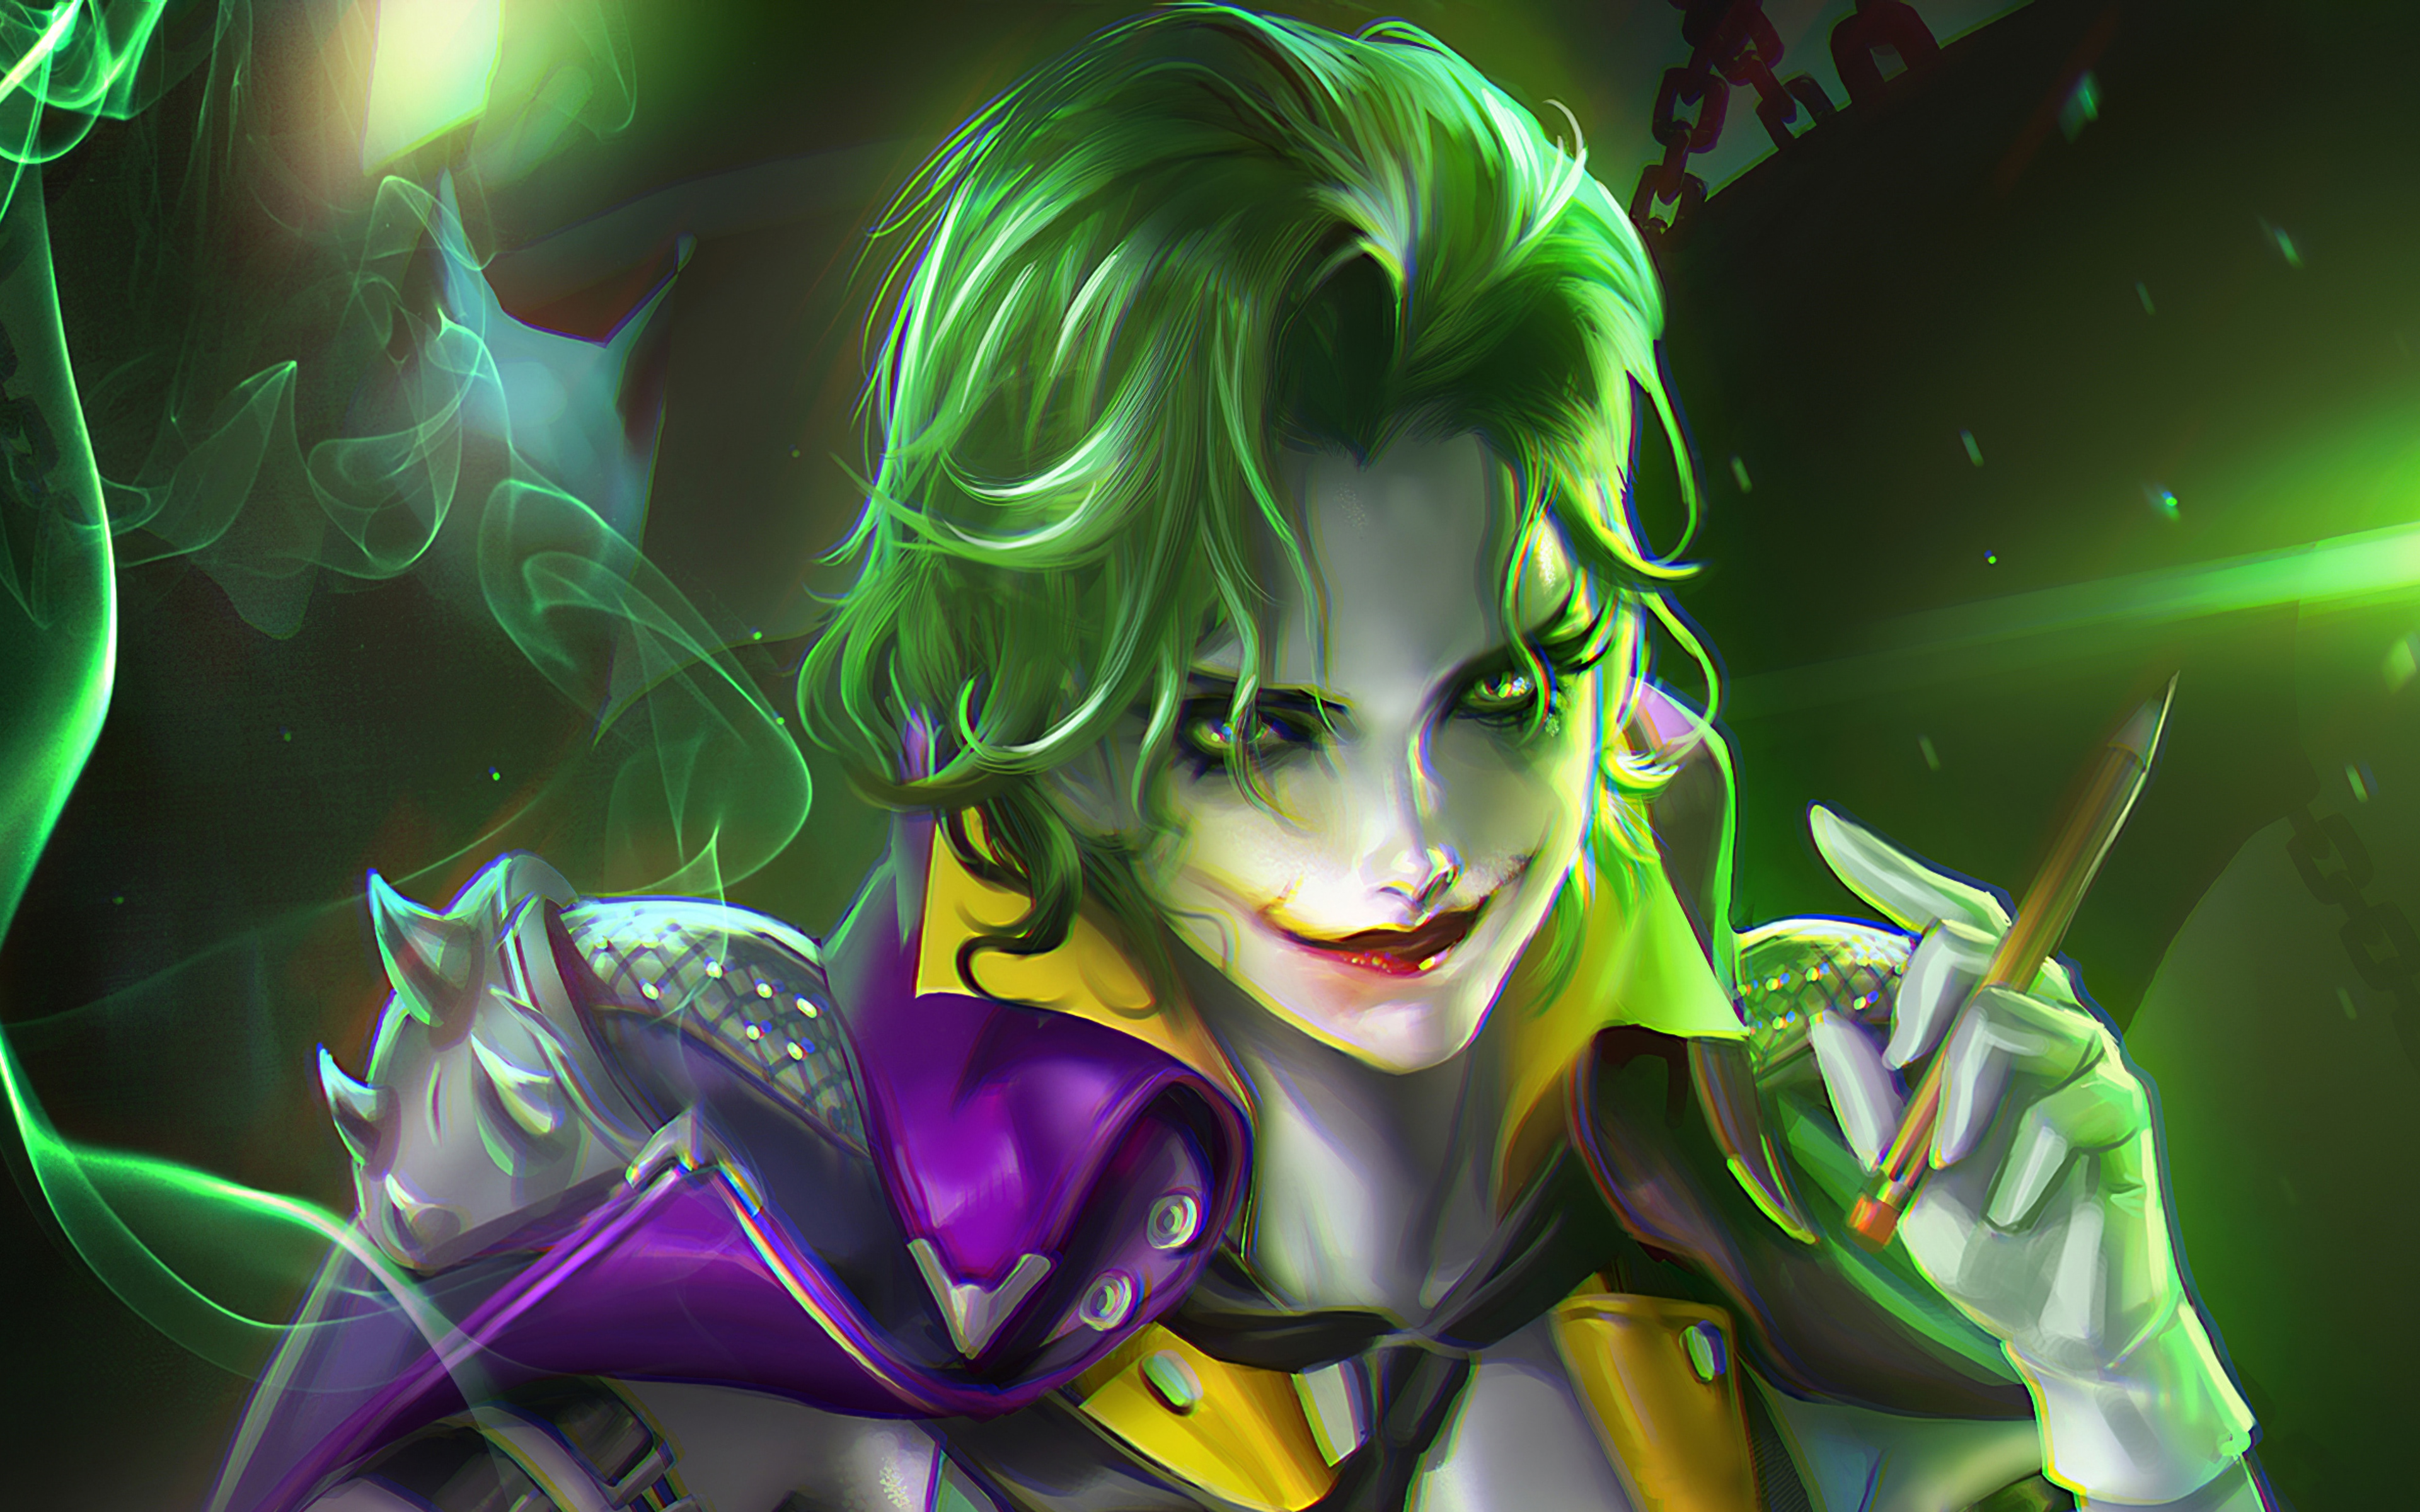 Joker art. DC fem Джокер. Fem Джокер арт. Джокер картинки.